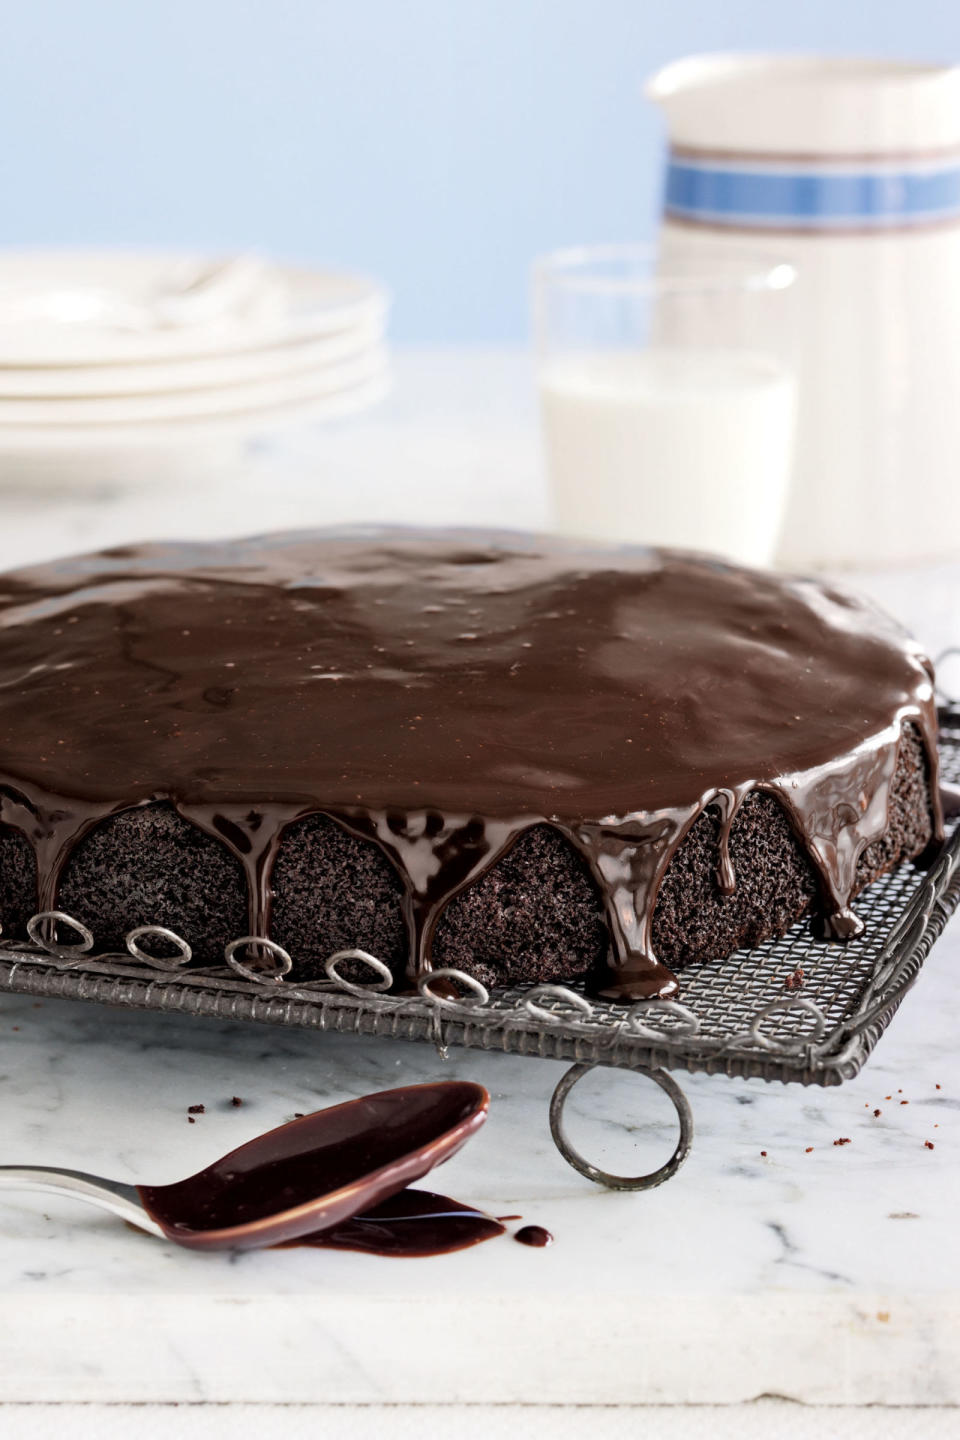 Basic Chocolate Cake